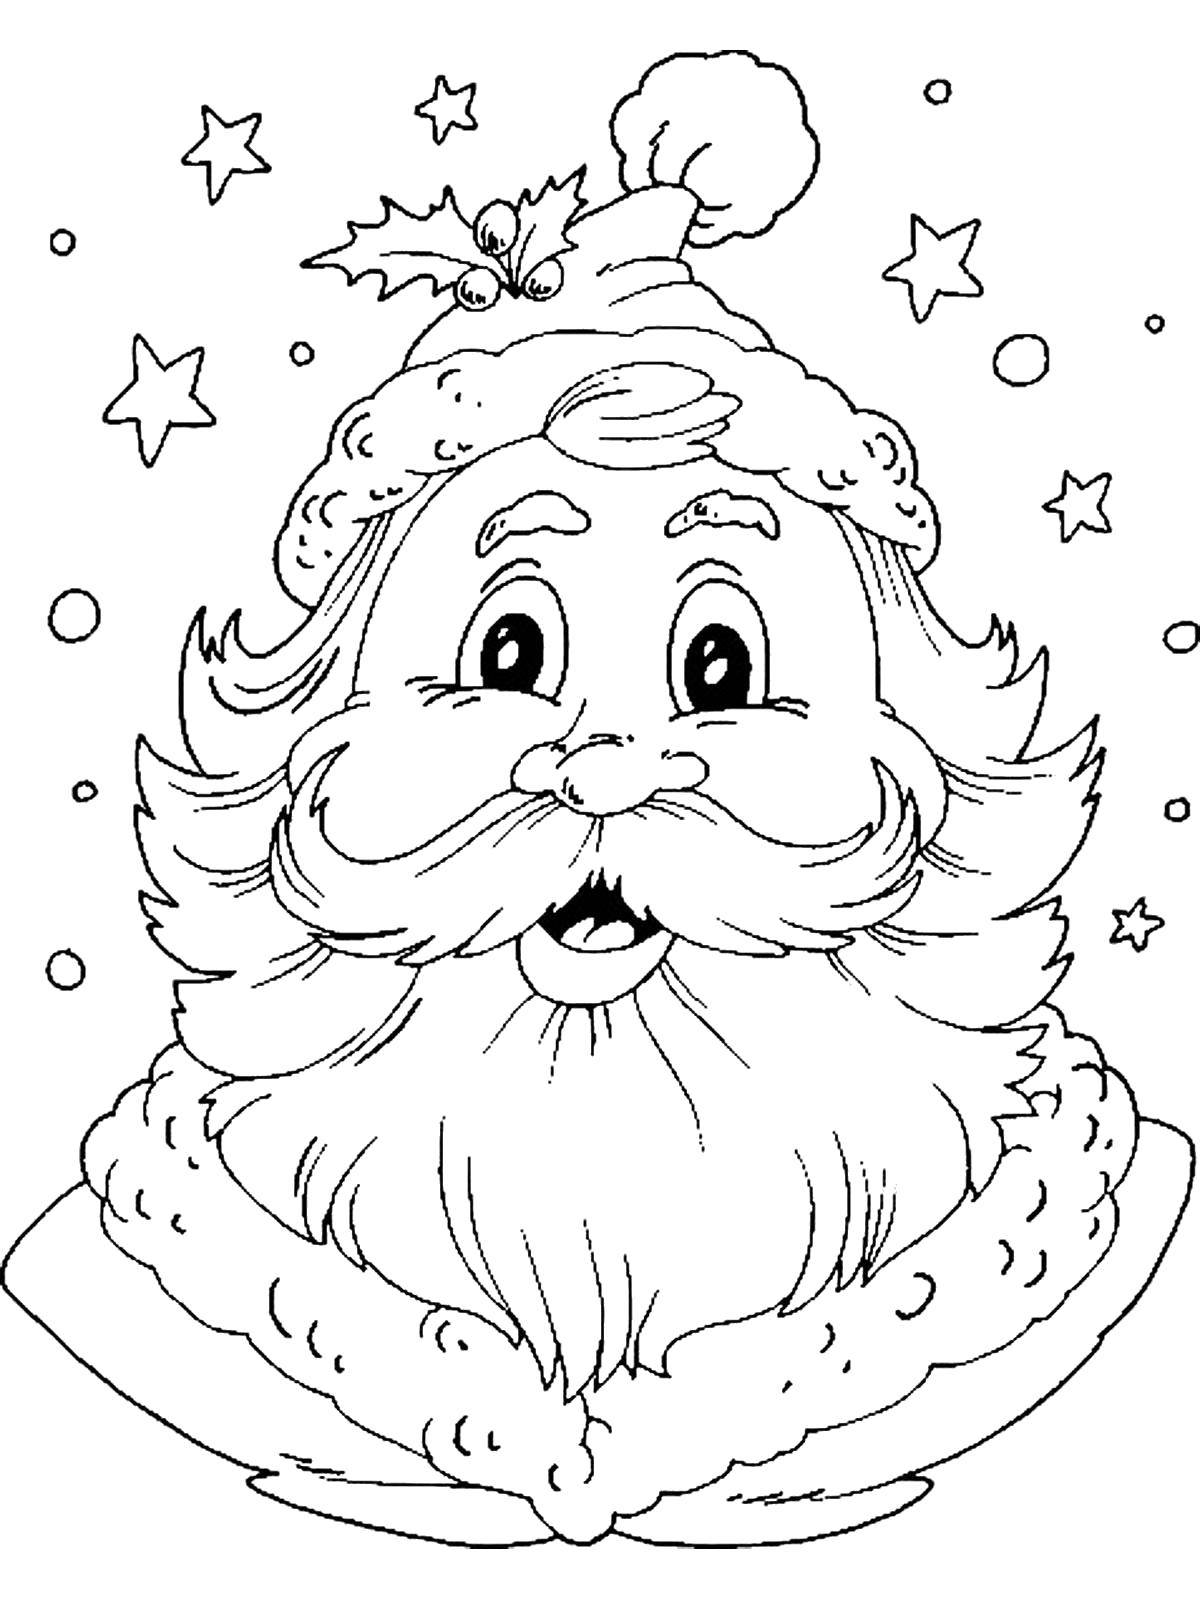 Coloring Santa Claus. Category new year. Tags:  New Year, Santa Claus.